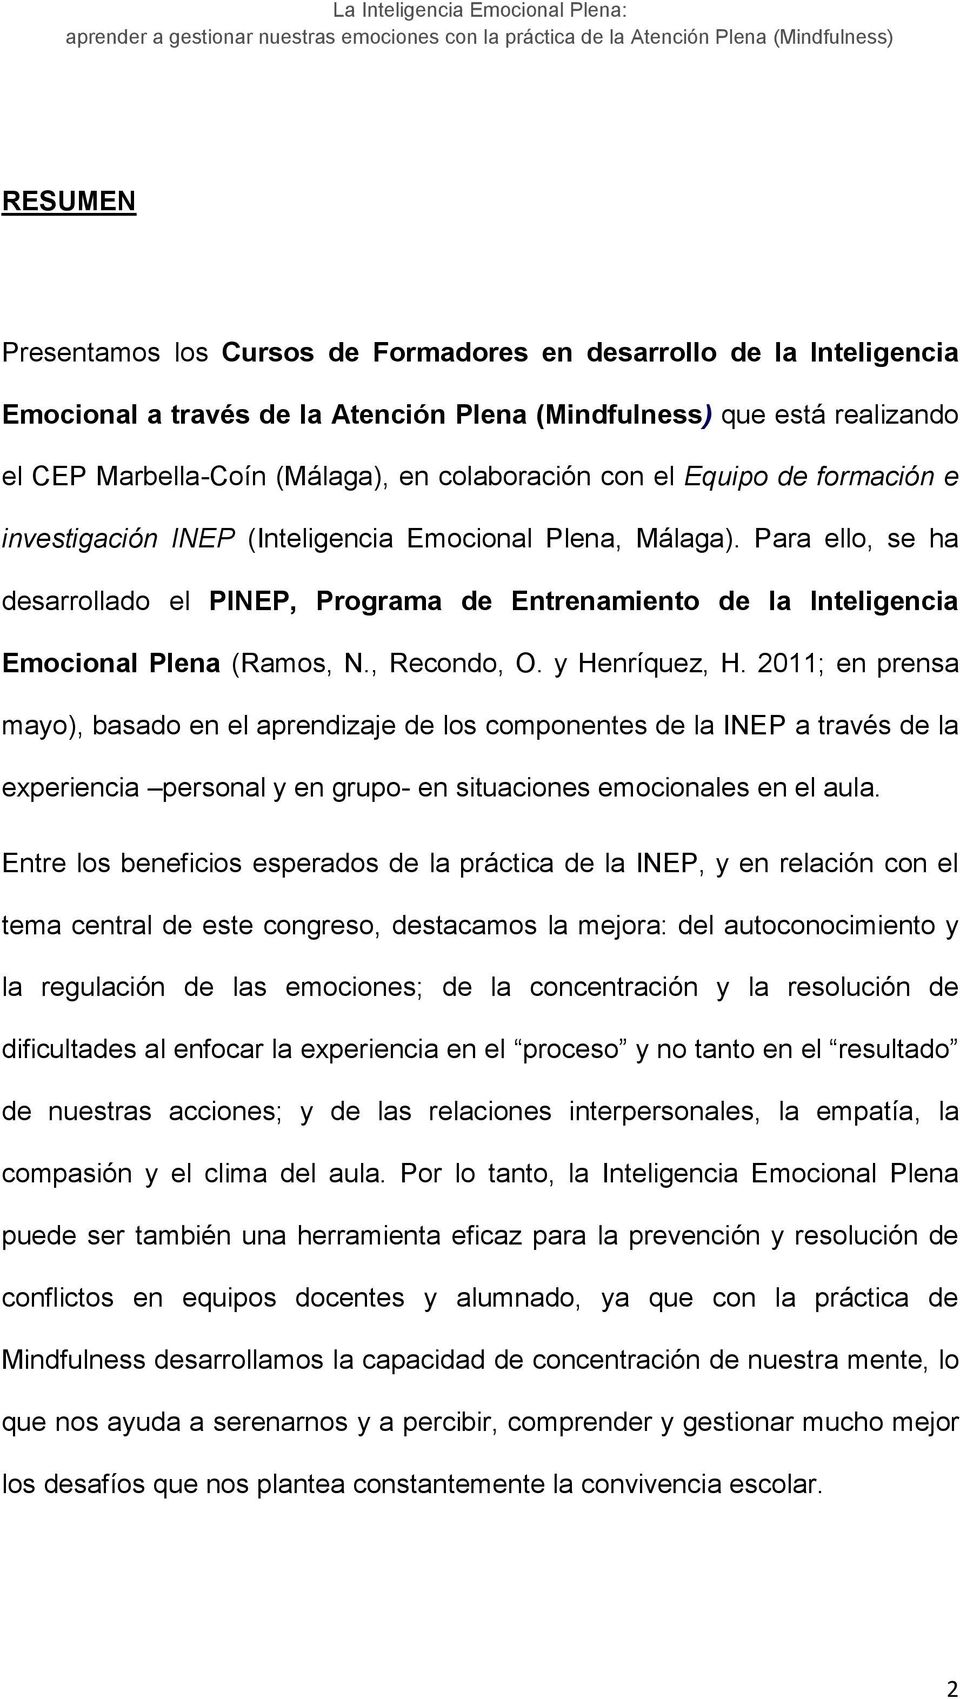 , Recondo, O. y Henríquez, H. 2011; en prensa mayo), basado en el aprendizaje de los componentes de la INEP a través de la experiencia personal y en grupo- en situaciones emocionales en el aula.